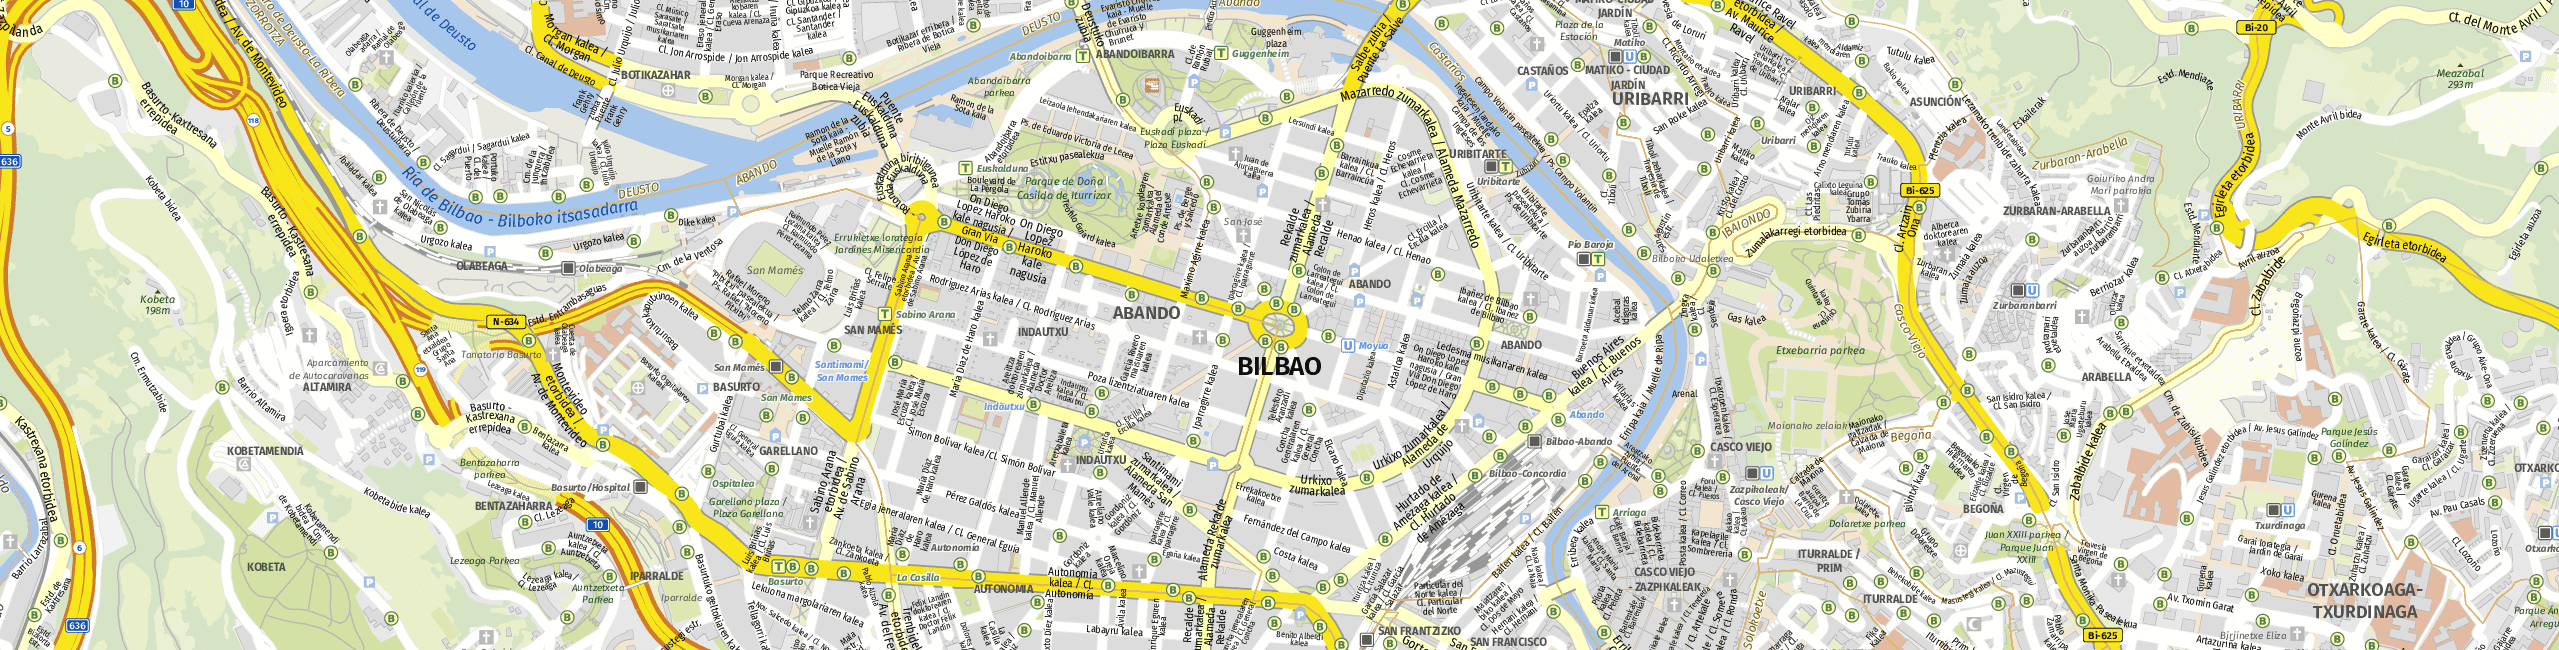 Stadtplan Bilbao zum Downloaden.